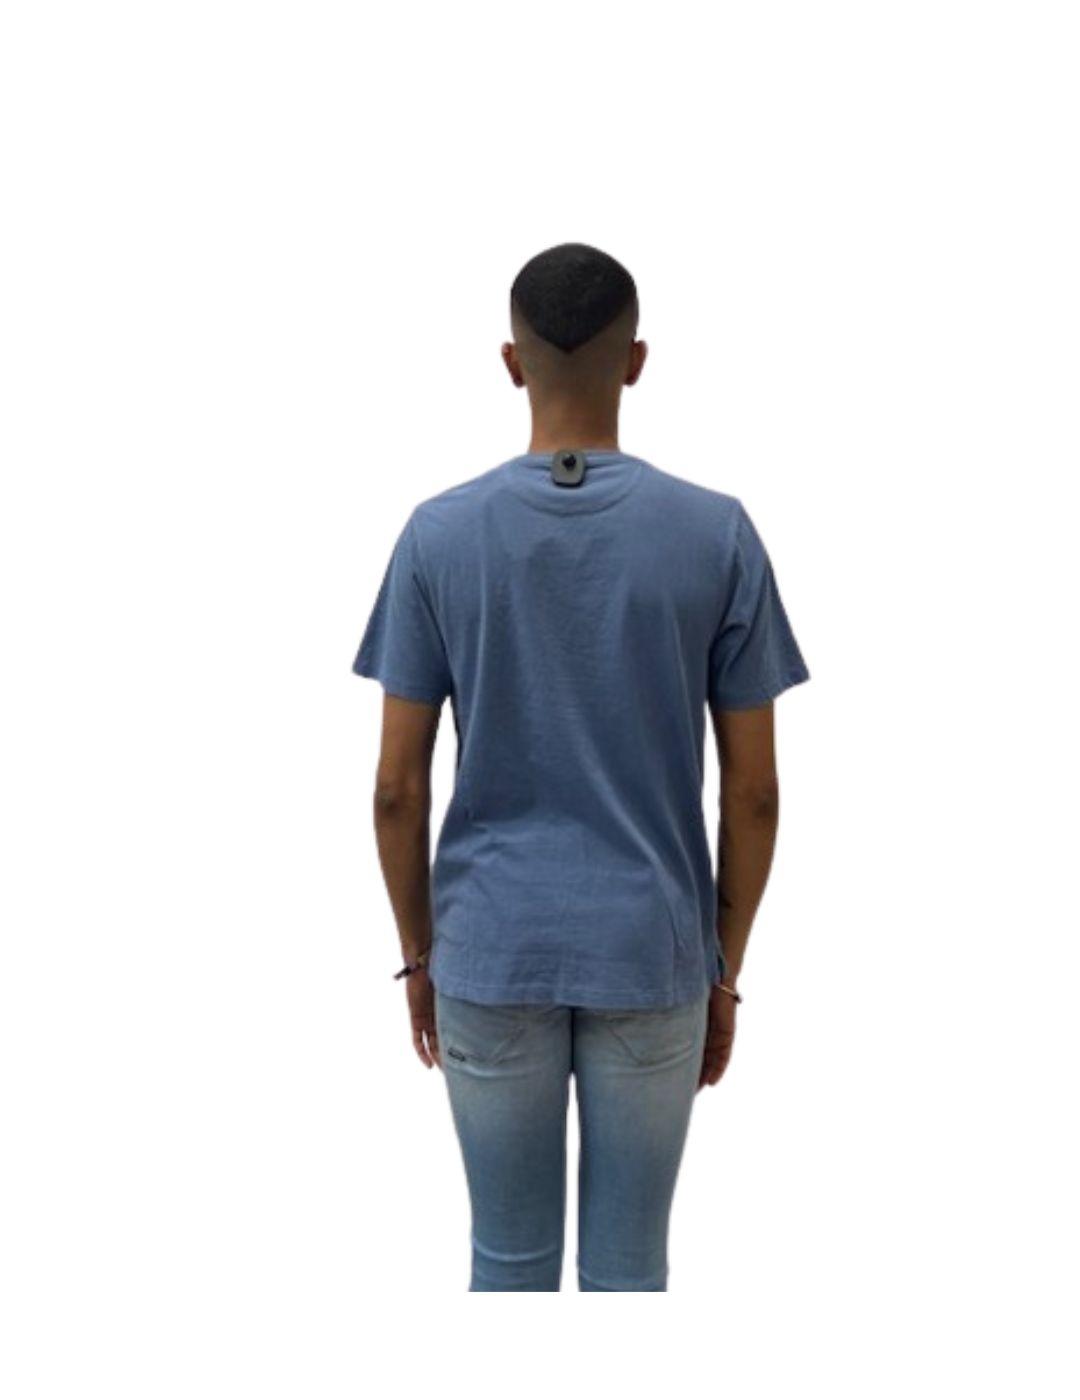 Camiseta La Vespita azul lavado logo vespita